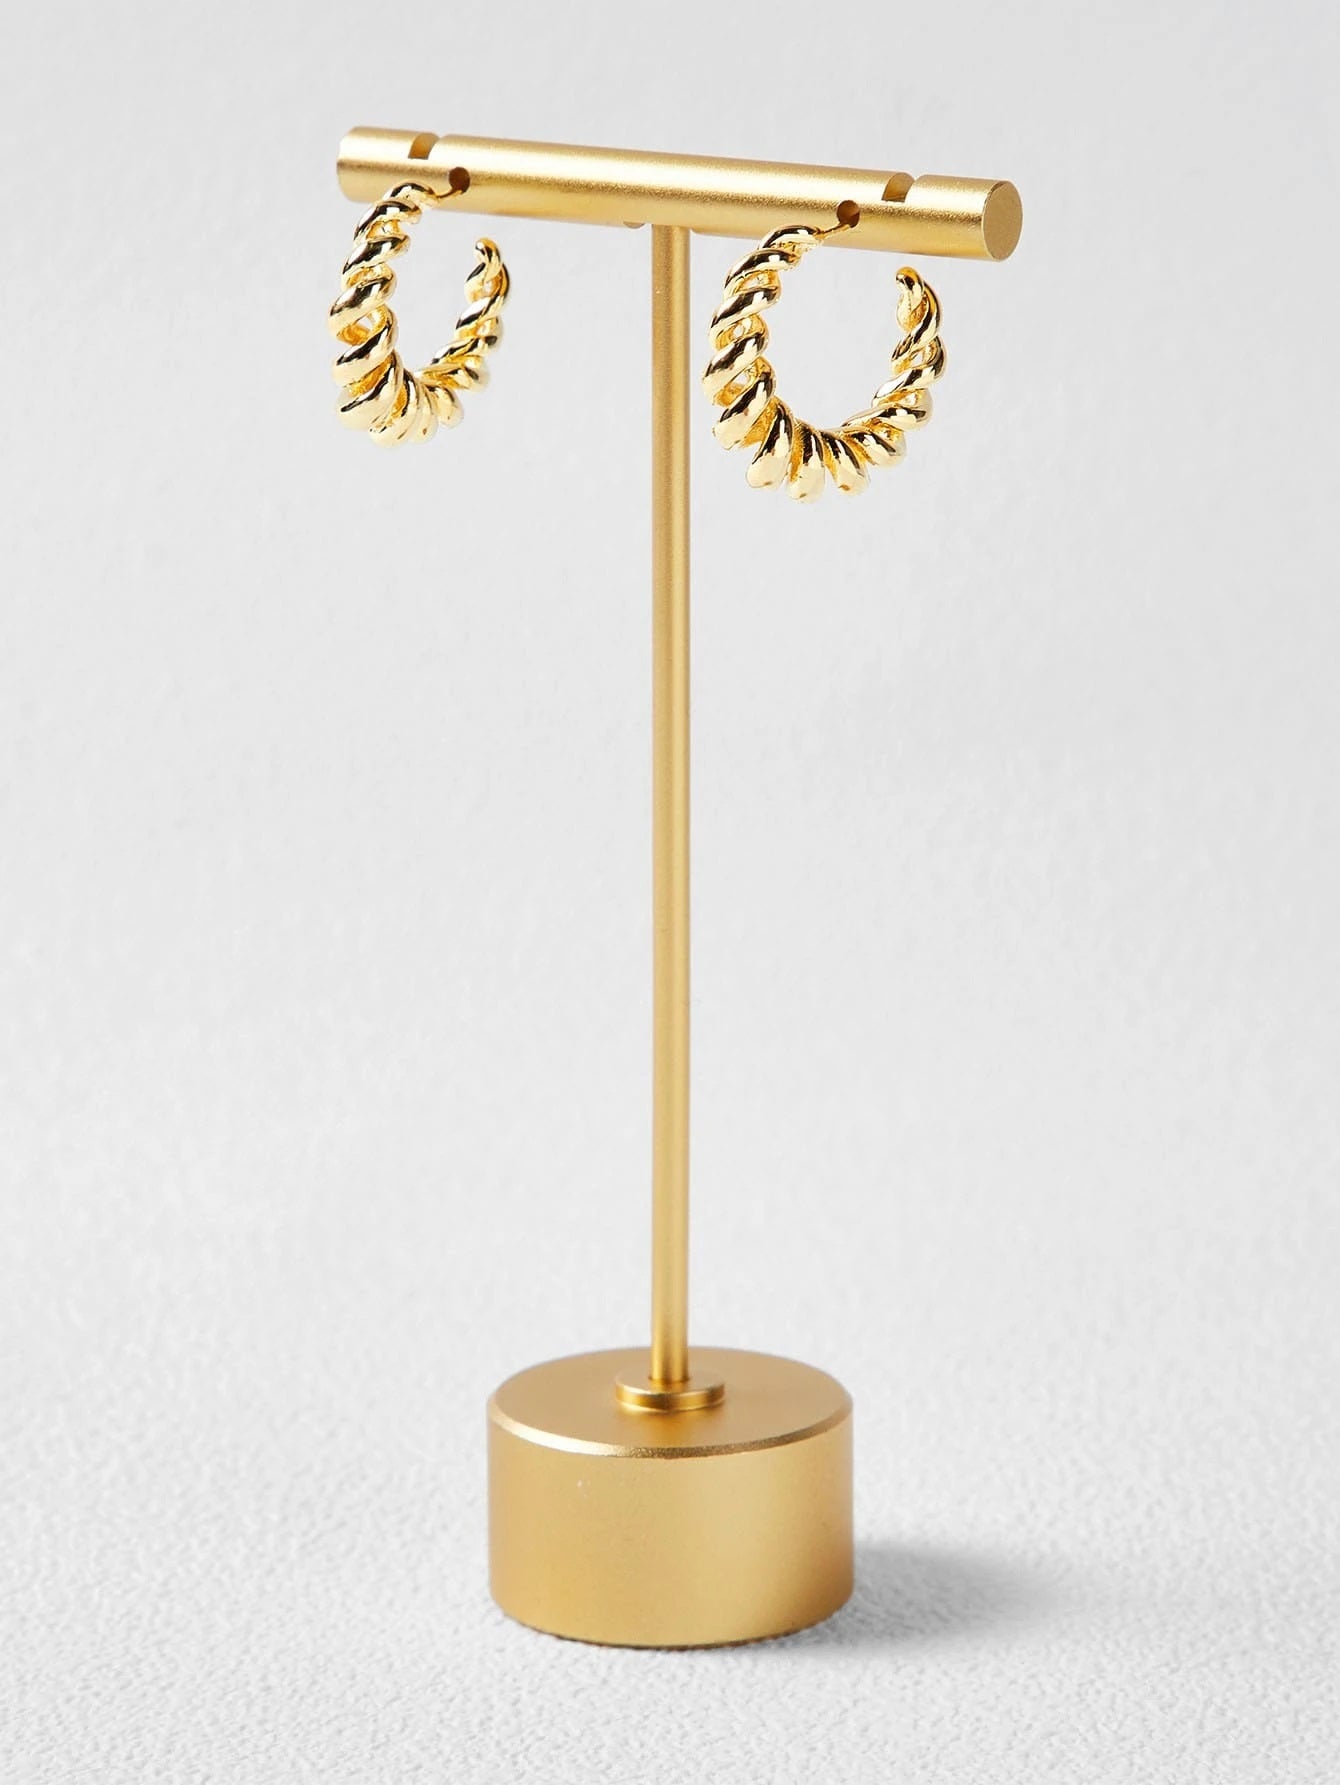 CM-AXS521330 Women Trendy Seoul Style 14K Gold Plated Twist Open Hoop Earrings